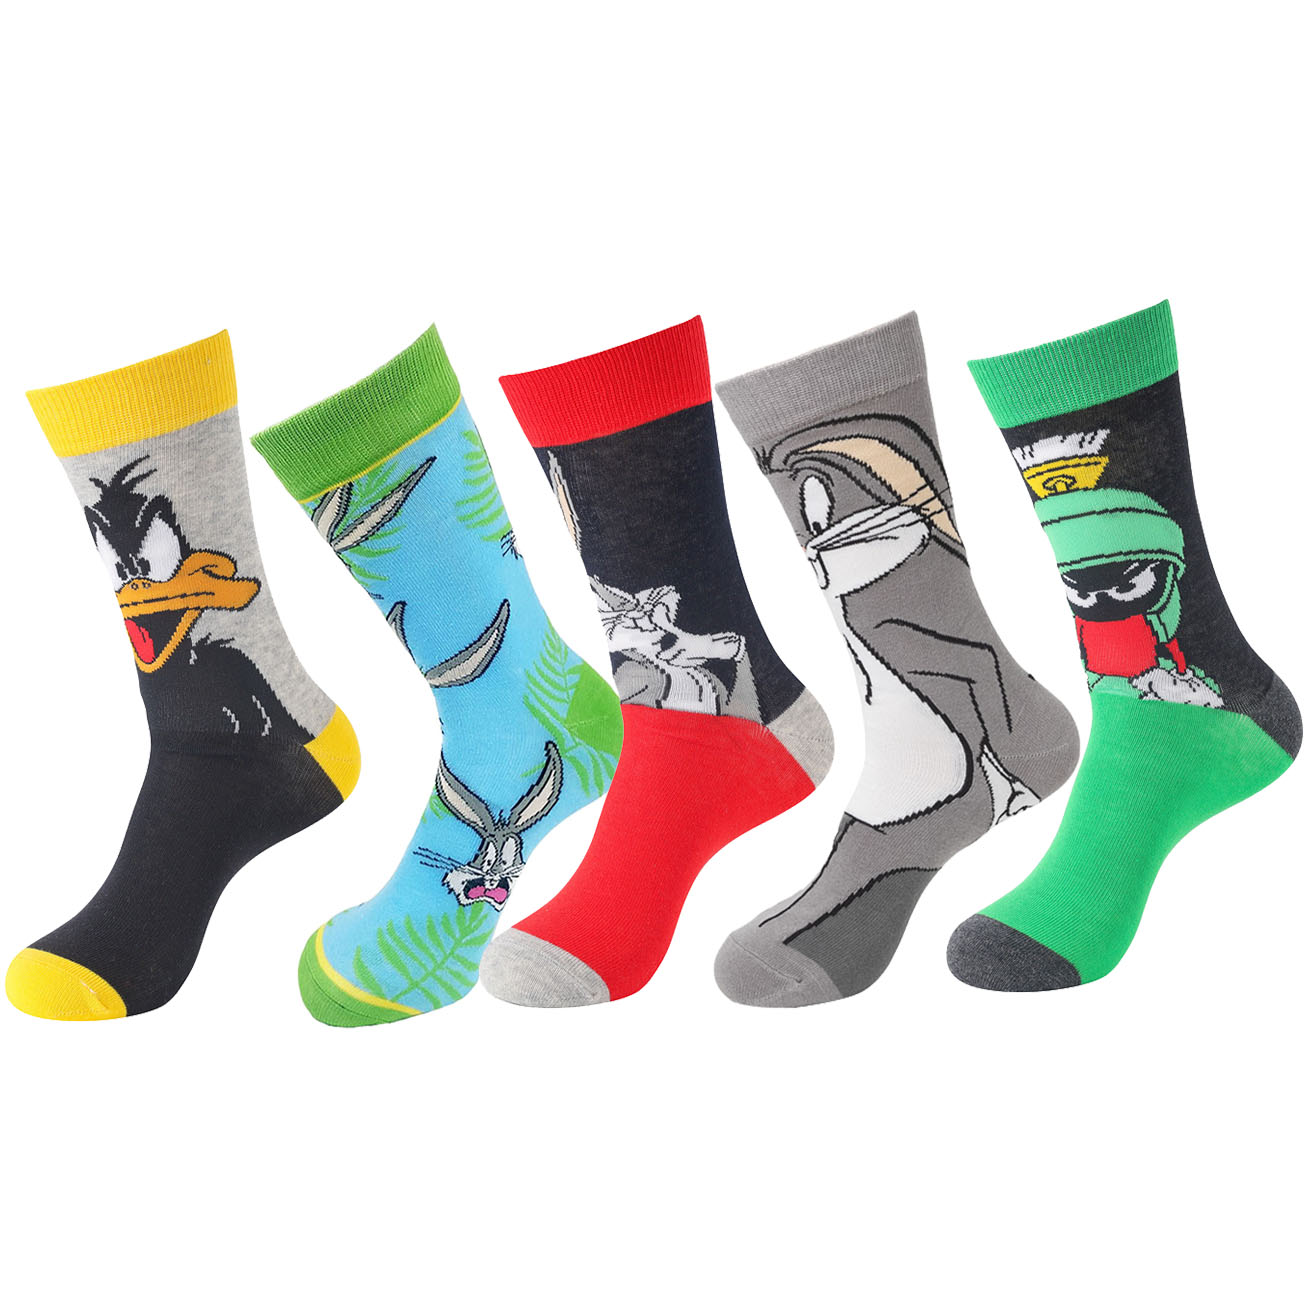 5 pares de calcetines clásicos de dibujos animados de personajes de  películas de terror, divertidos y novedosos calcetines de algodón con  diseño